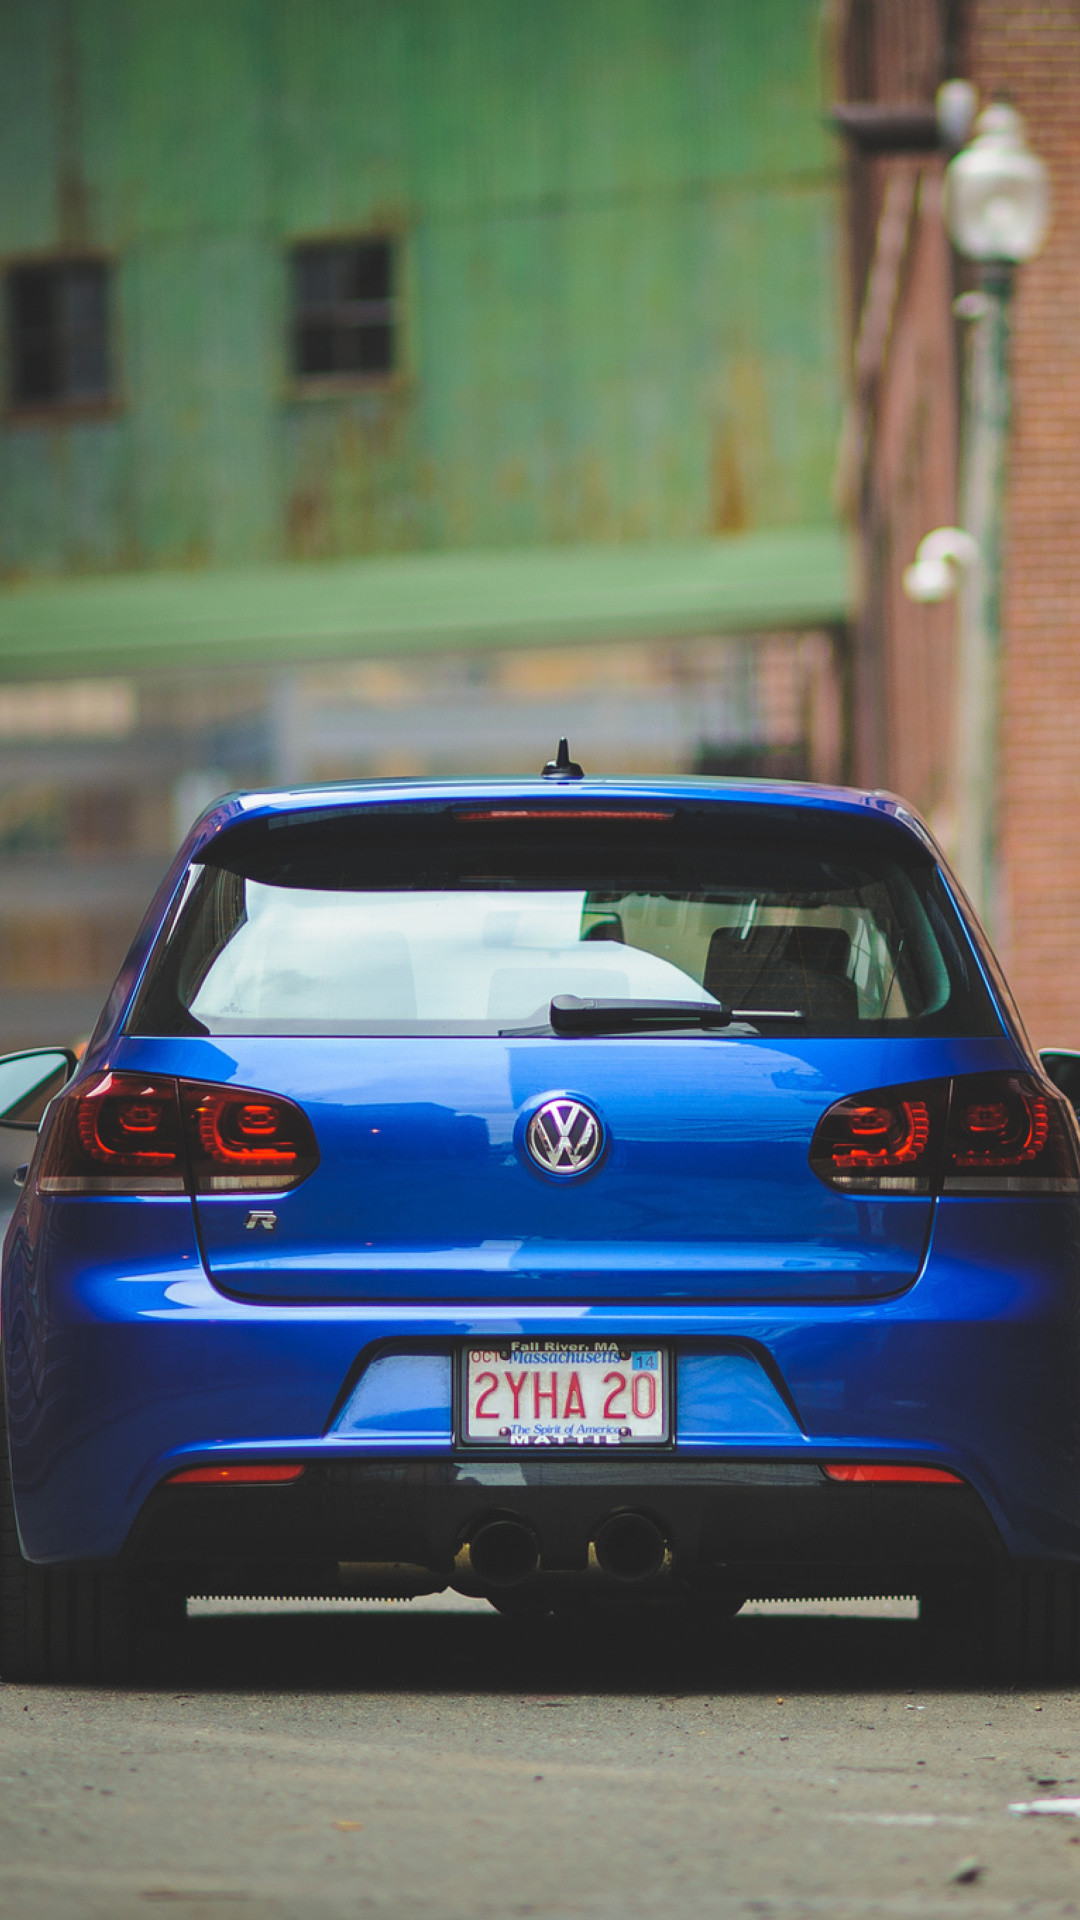 Volkswagen Golf R Wallpaper for iPhone 6 Plus